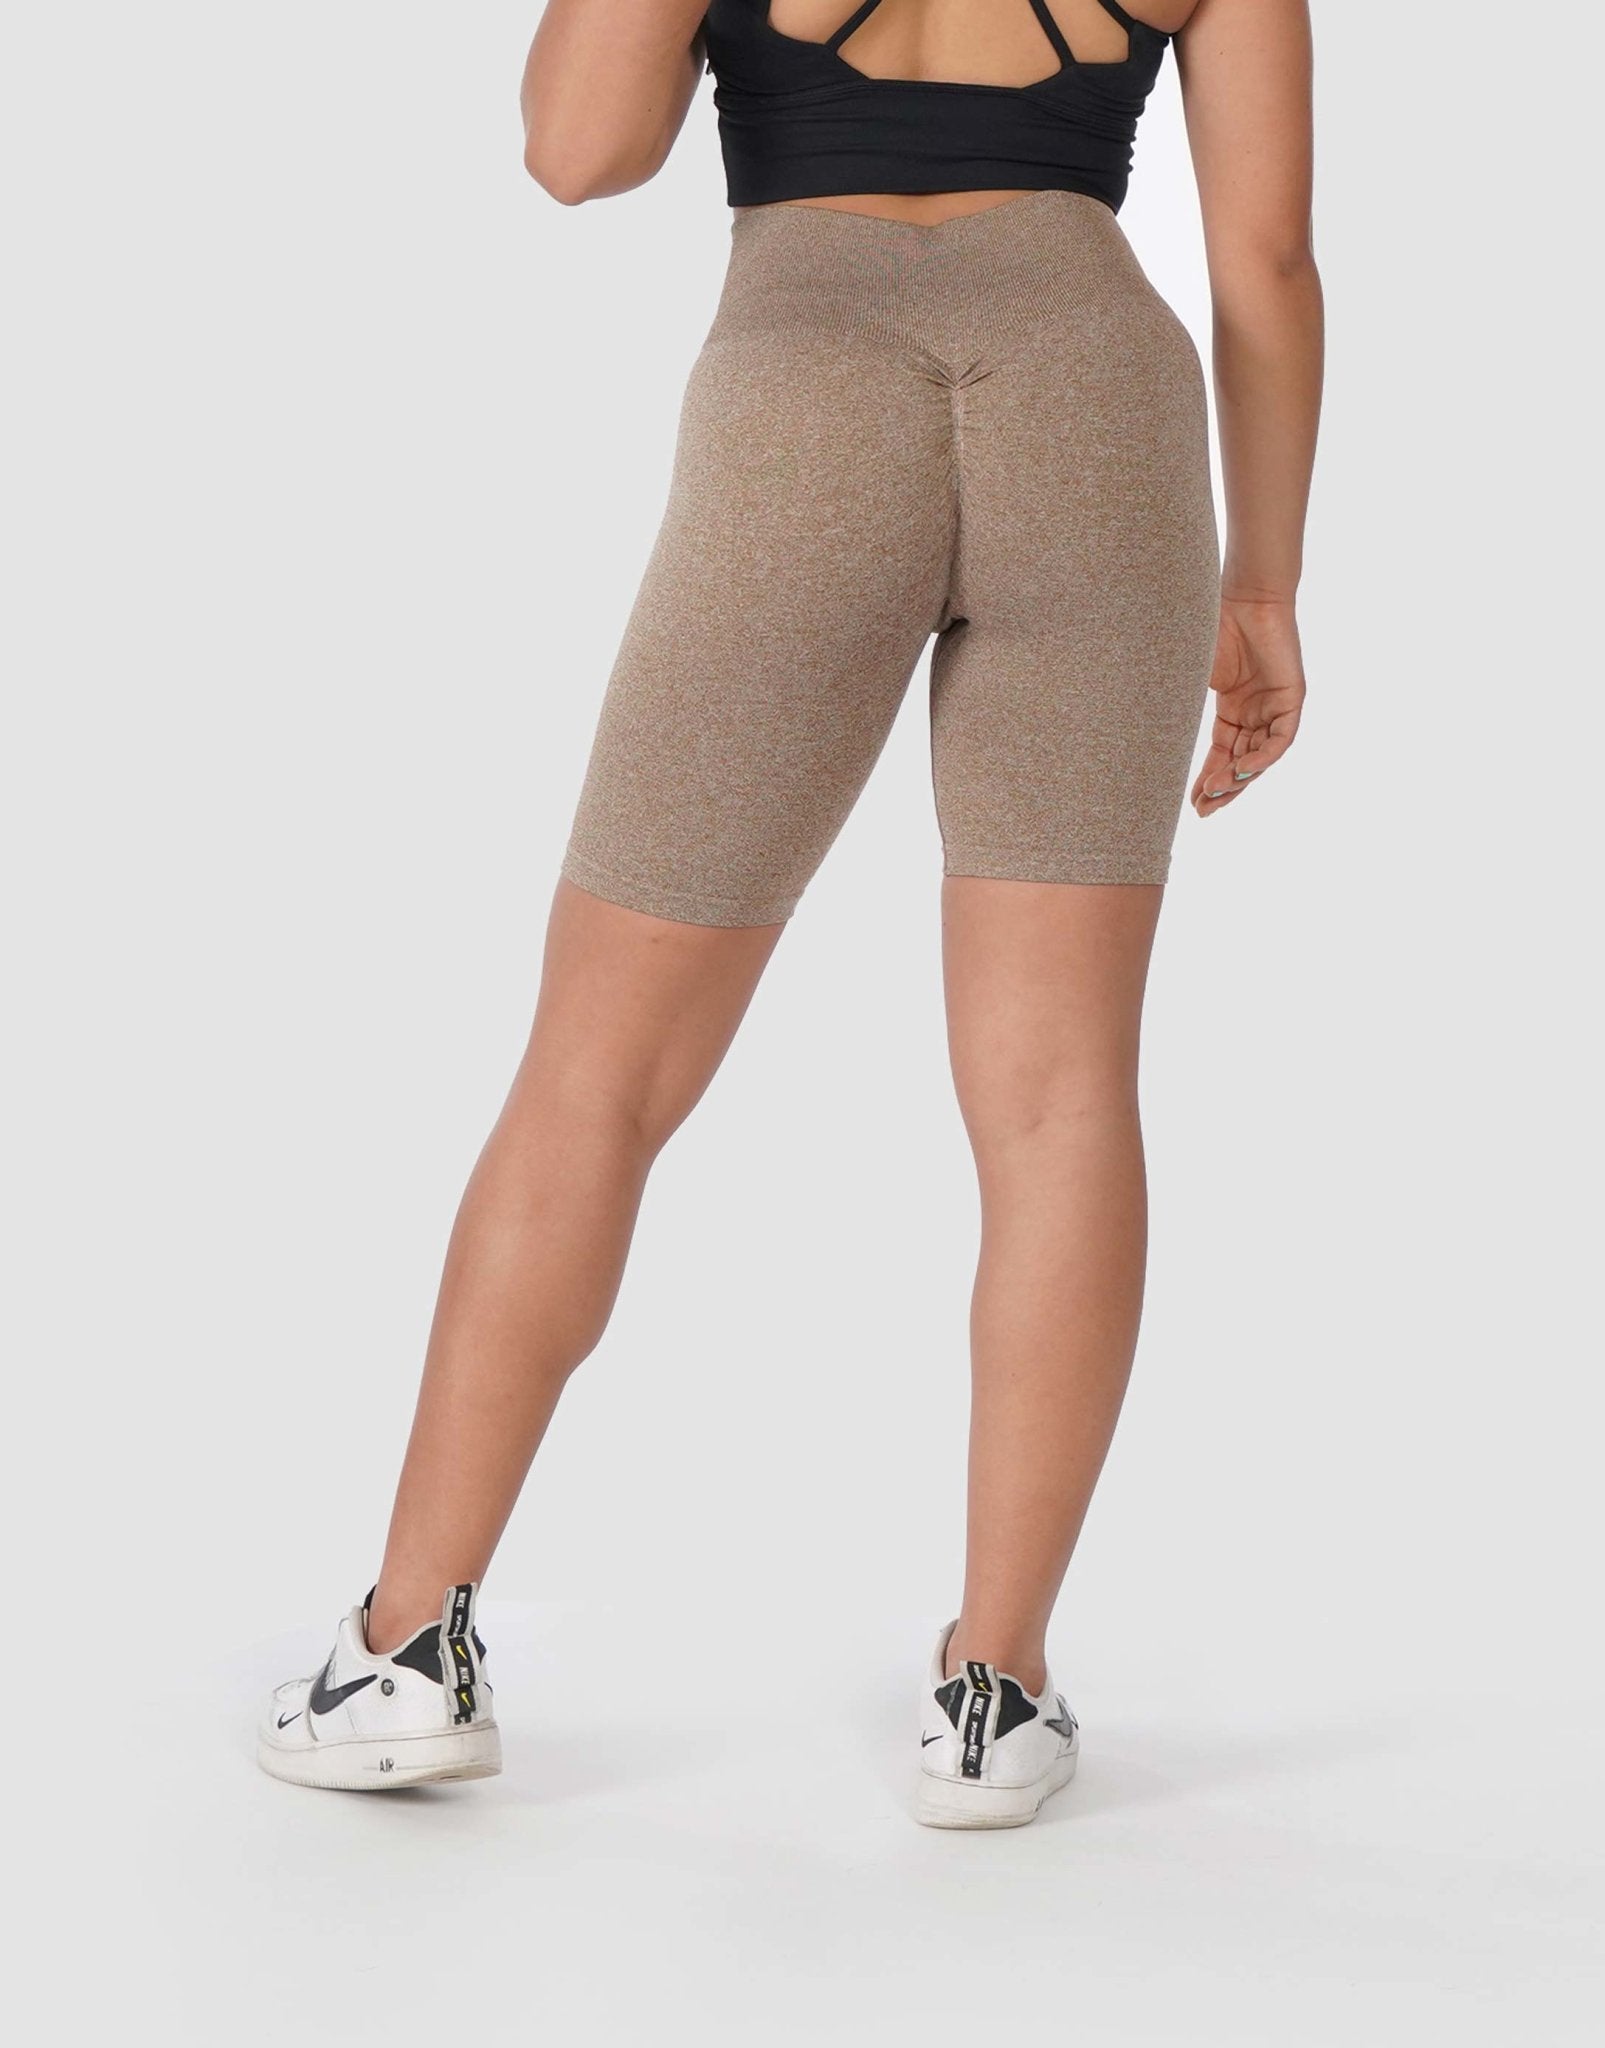 Dri-fit Shorts/Pants for Women — fencing parents